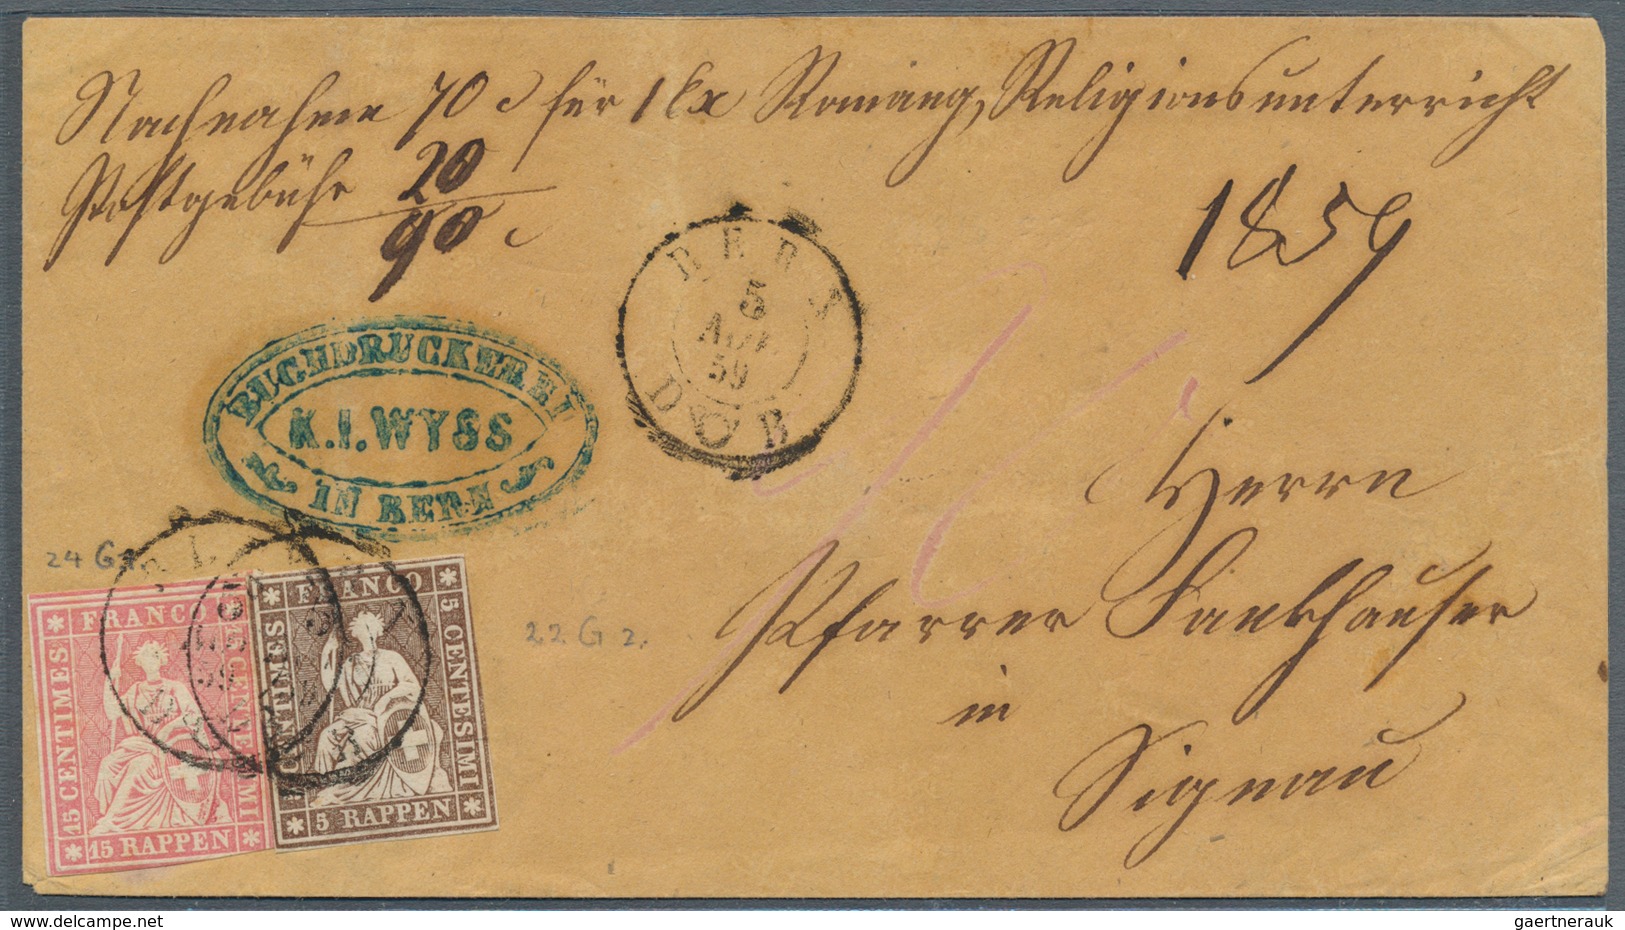 Schweiz: 1854-1862 STRUBEL: Kollektion Von Rund 100 Gestempelten Marken (2 Rp. Bis 1 Fr.) Und 10 Bri - Collections